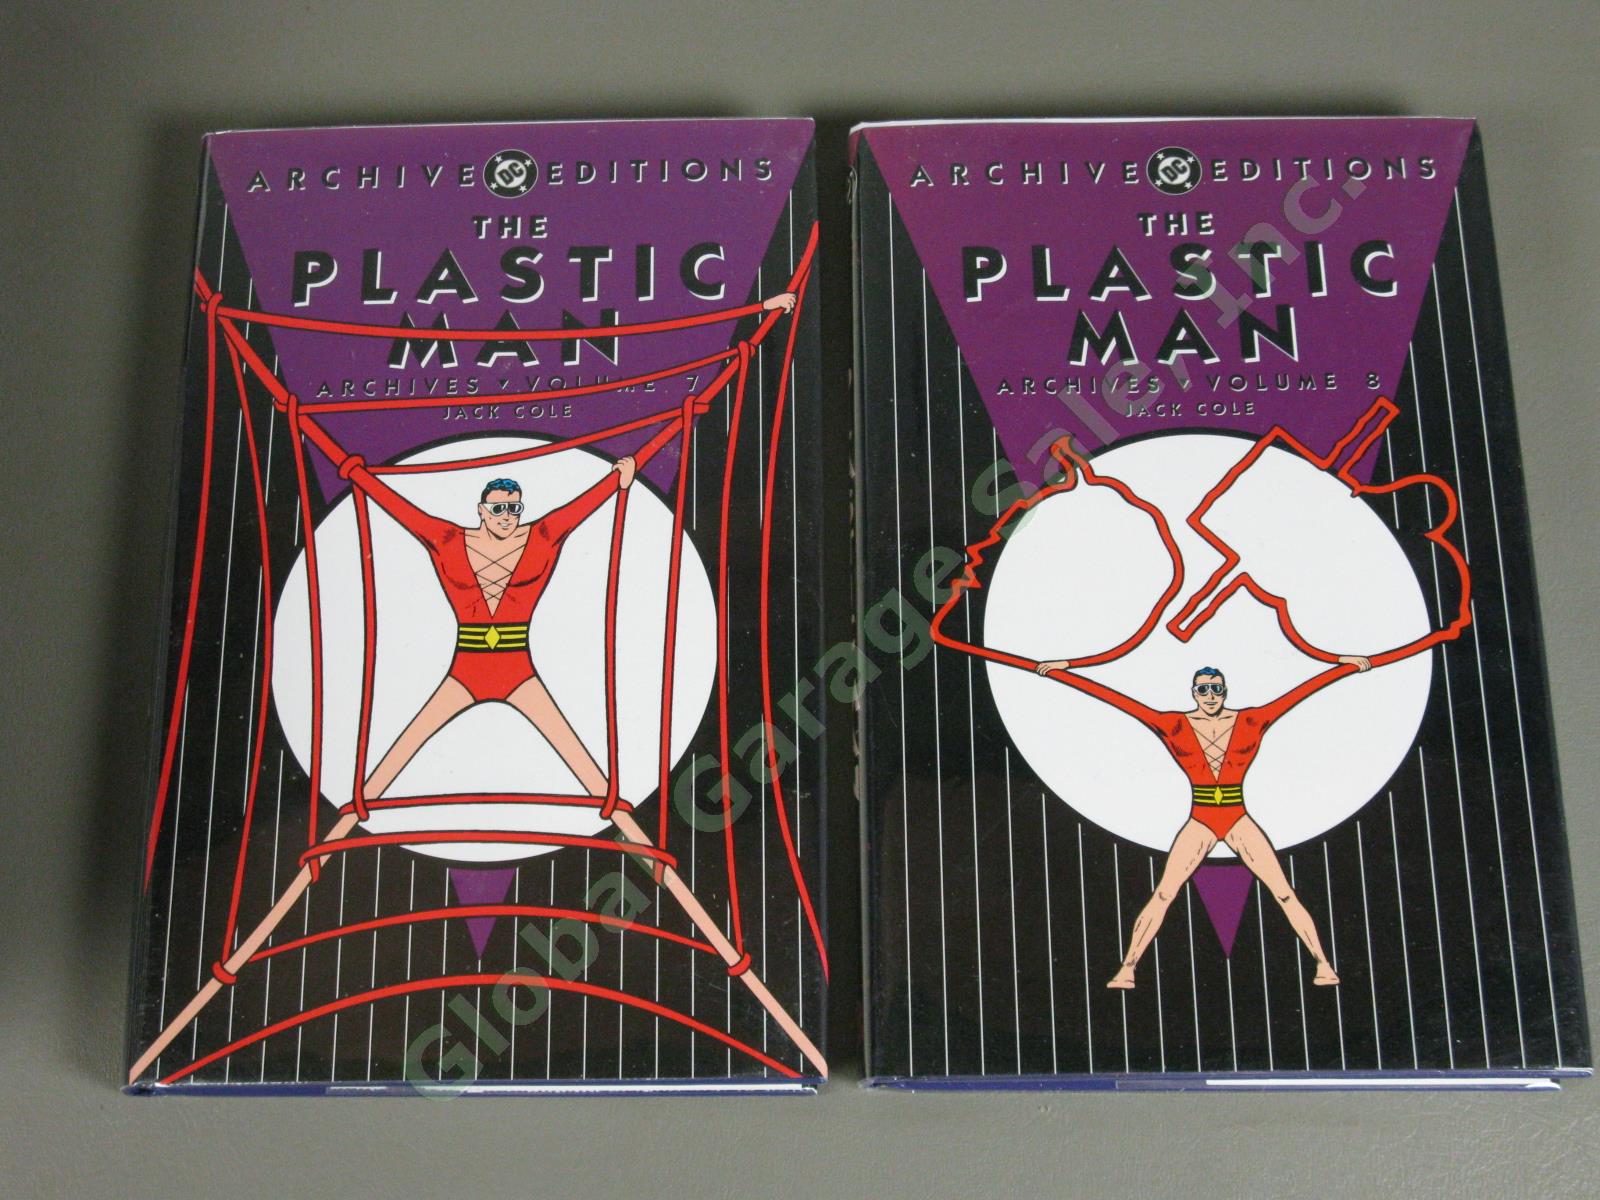 NEW DC Archives Plastic Man Volumes 1-8 Complete Comic Book Set Jack Cole MINT 9